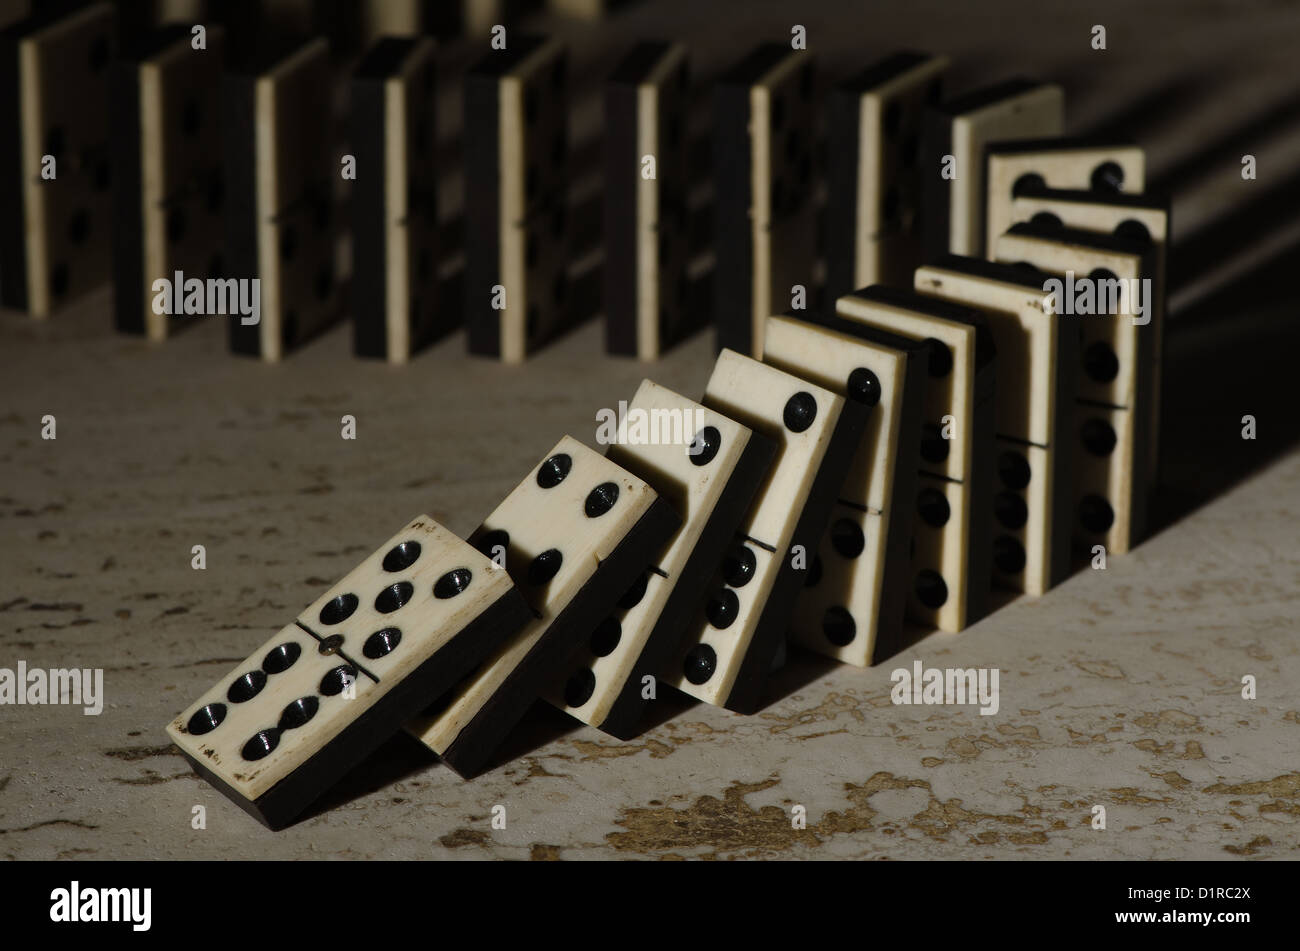 Reihen von aufgereiht altes Elfenbein und Ebenholz Bronze angehefteten stehende Domino blockiert Stücke auf weißem Tan Travertin-Marmor Stockfoto